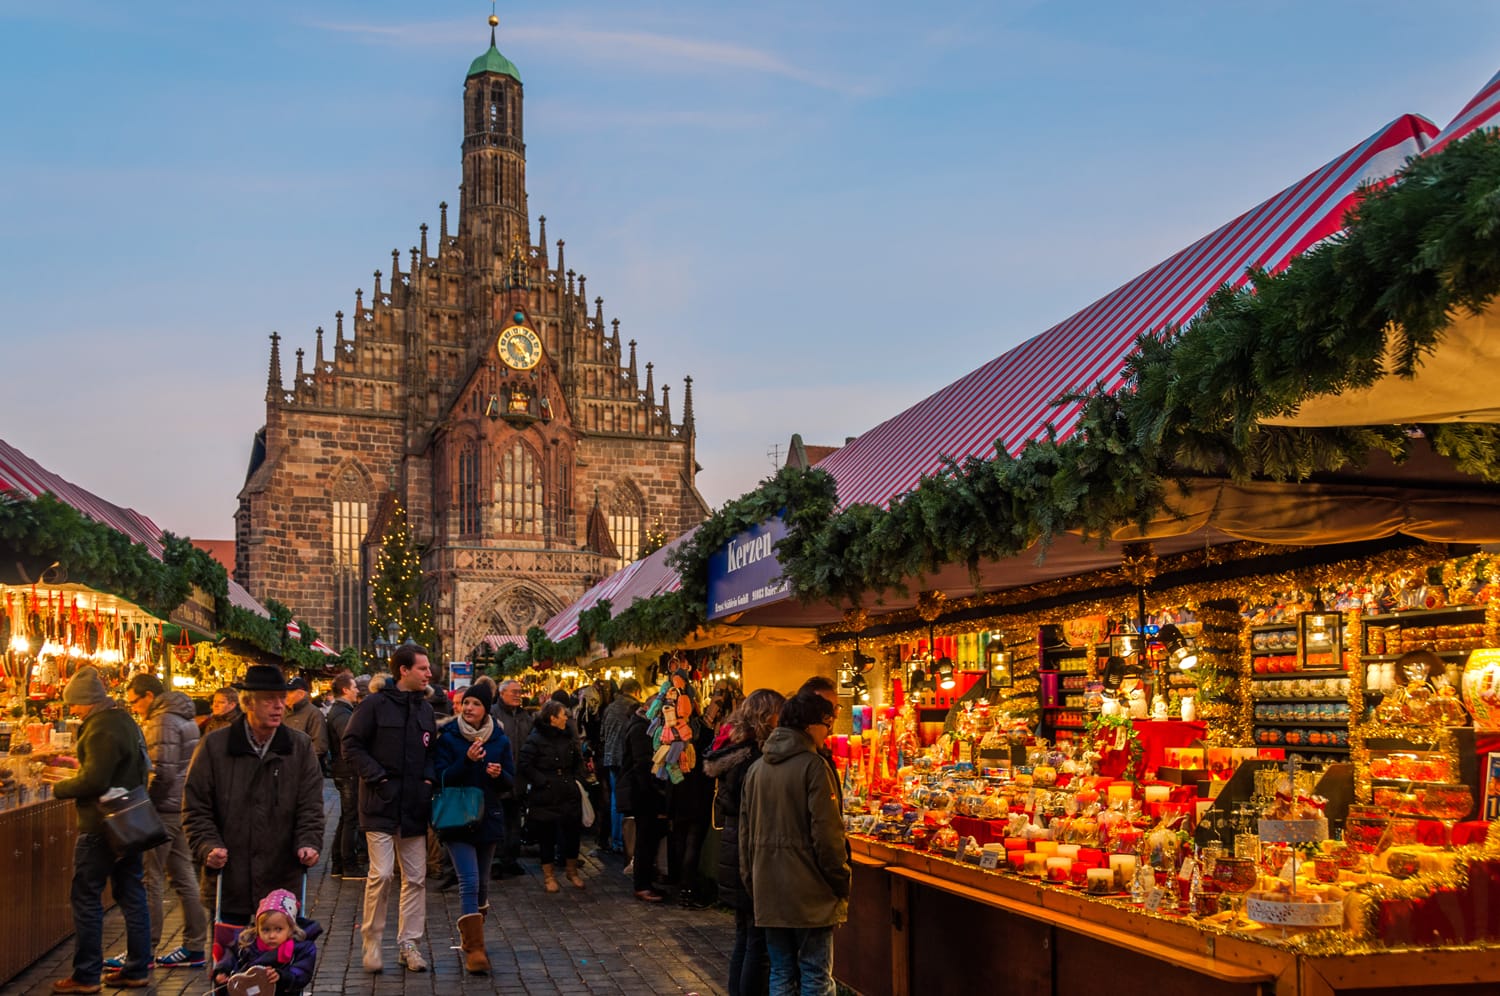 Il Mercatino di Natale di Norimberga è una delle fiere natalizie più antiche della Germania, risalente al XVI secolo.